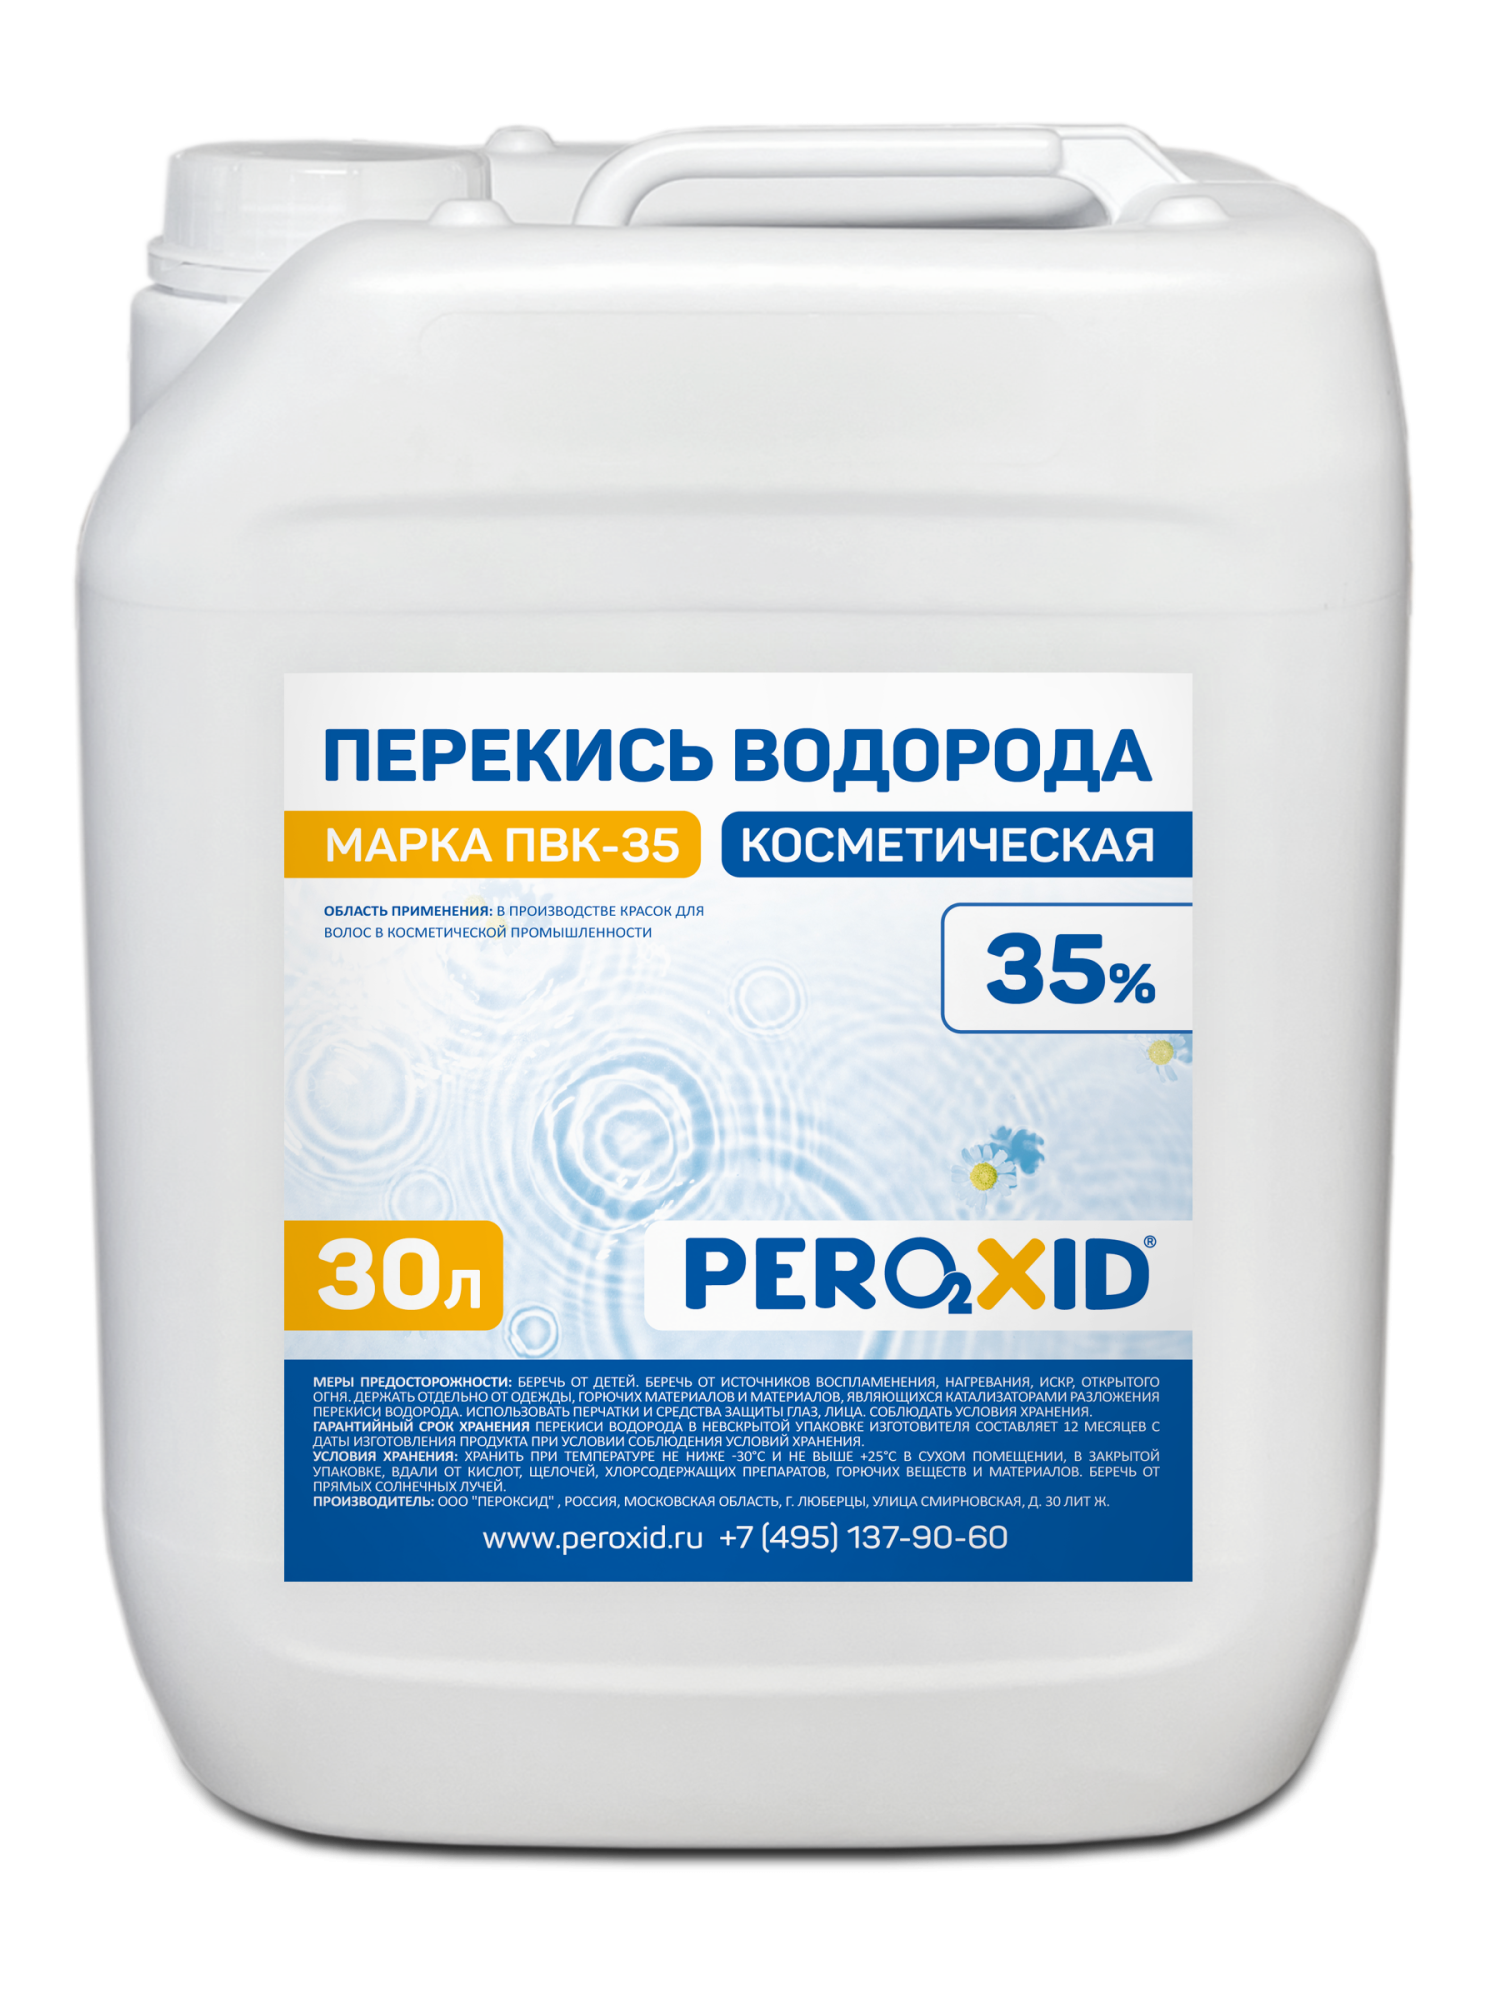 Перекись водорода косметическая PEROXID 35% марка ПВК - 35 ТУ 2123-005-25665344-2009 30 л/34 кг